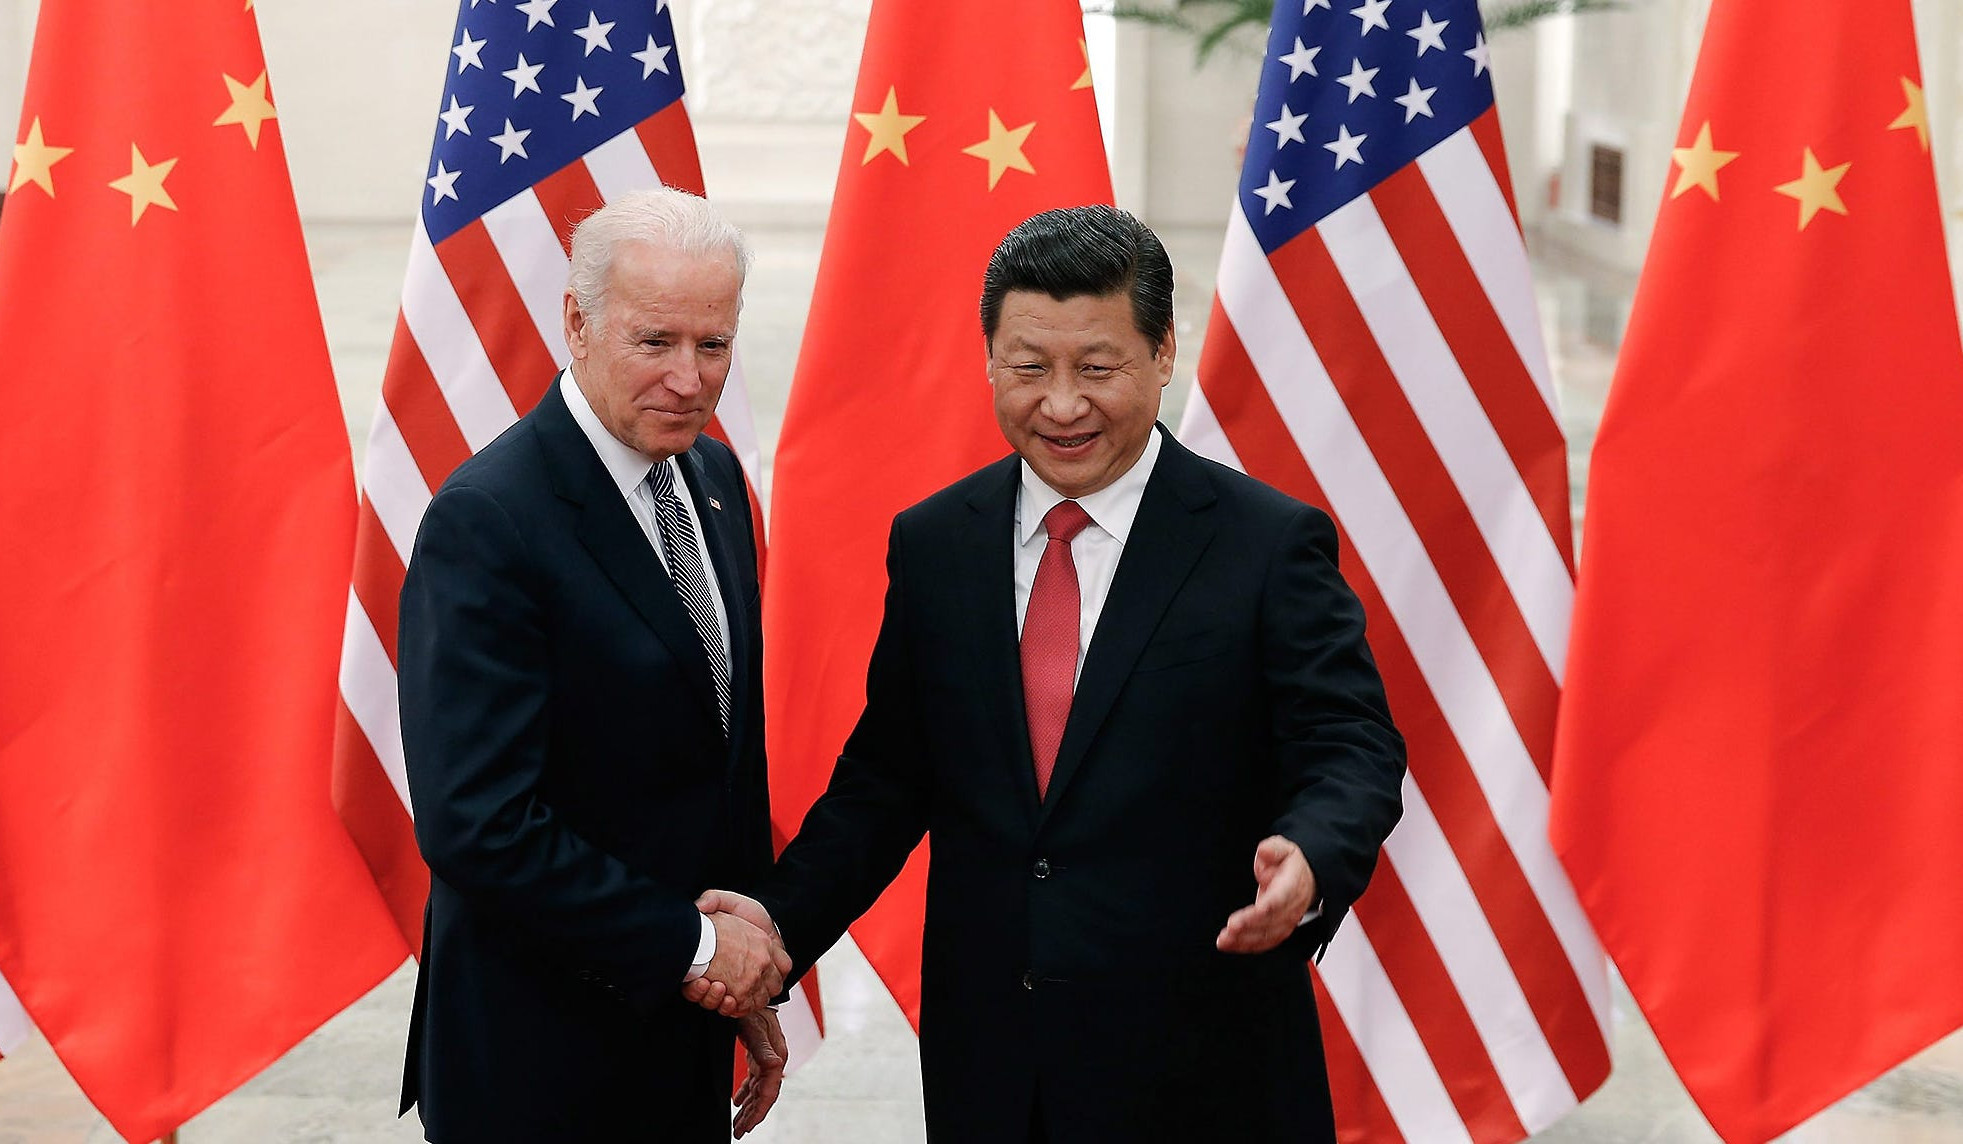 Բայդենը Սի Ծինփինի հետ հեռախոսազրույցում կհաստատի ԱՄՆ հավատարմությունը  «մեկ Չինաստան» սկզբունքին. Քիրբի